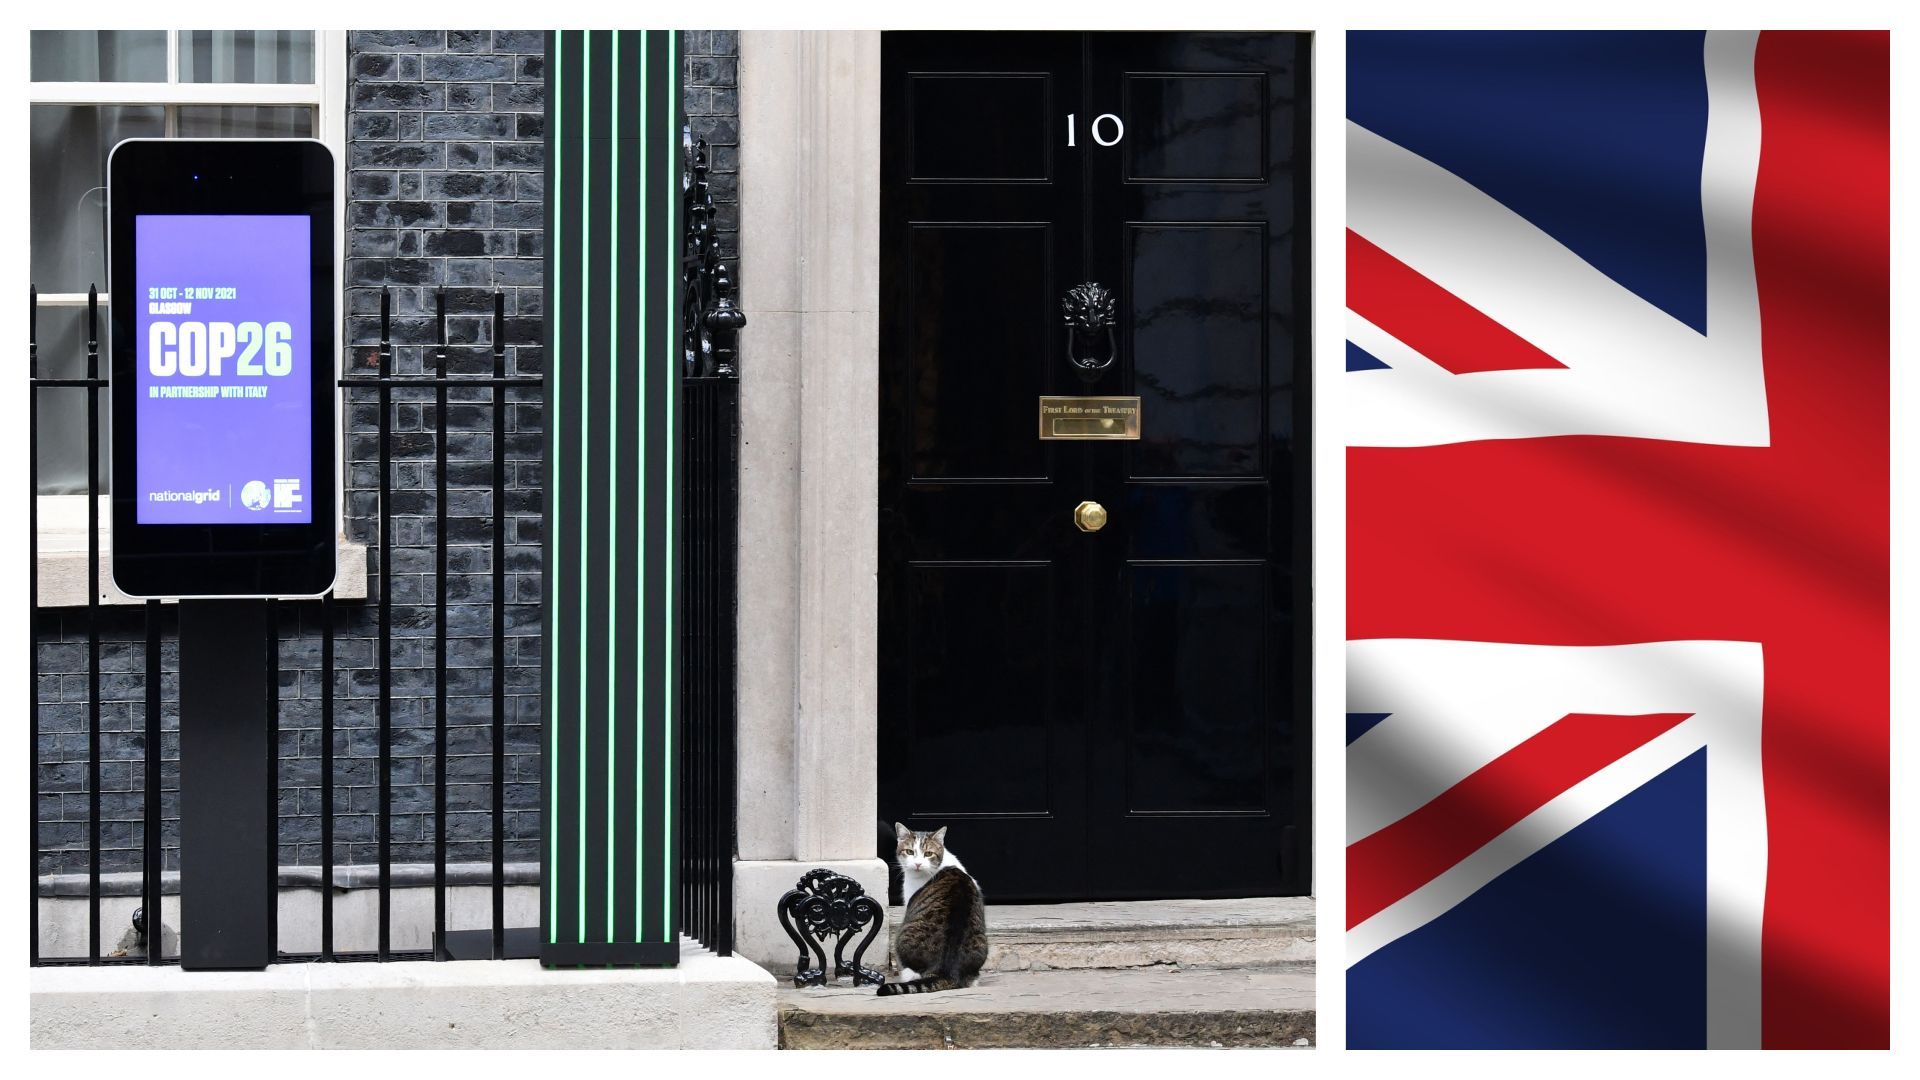 Le chat du 10 Downing Street lors de la COP6 à Glasgow et Union Jack (illustration)